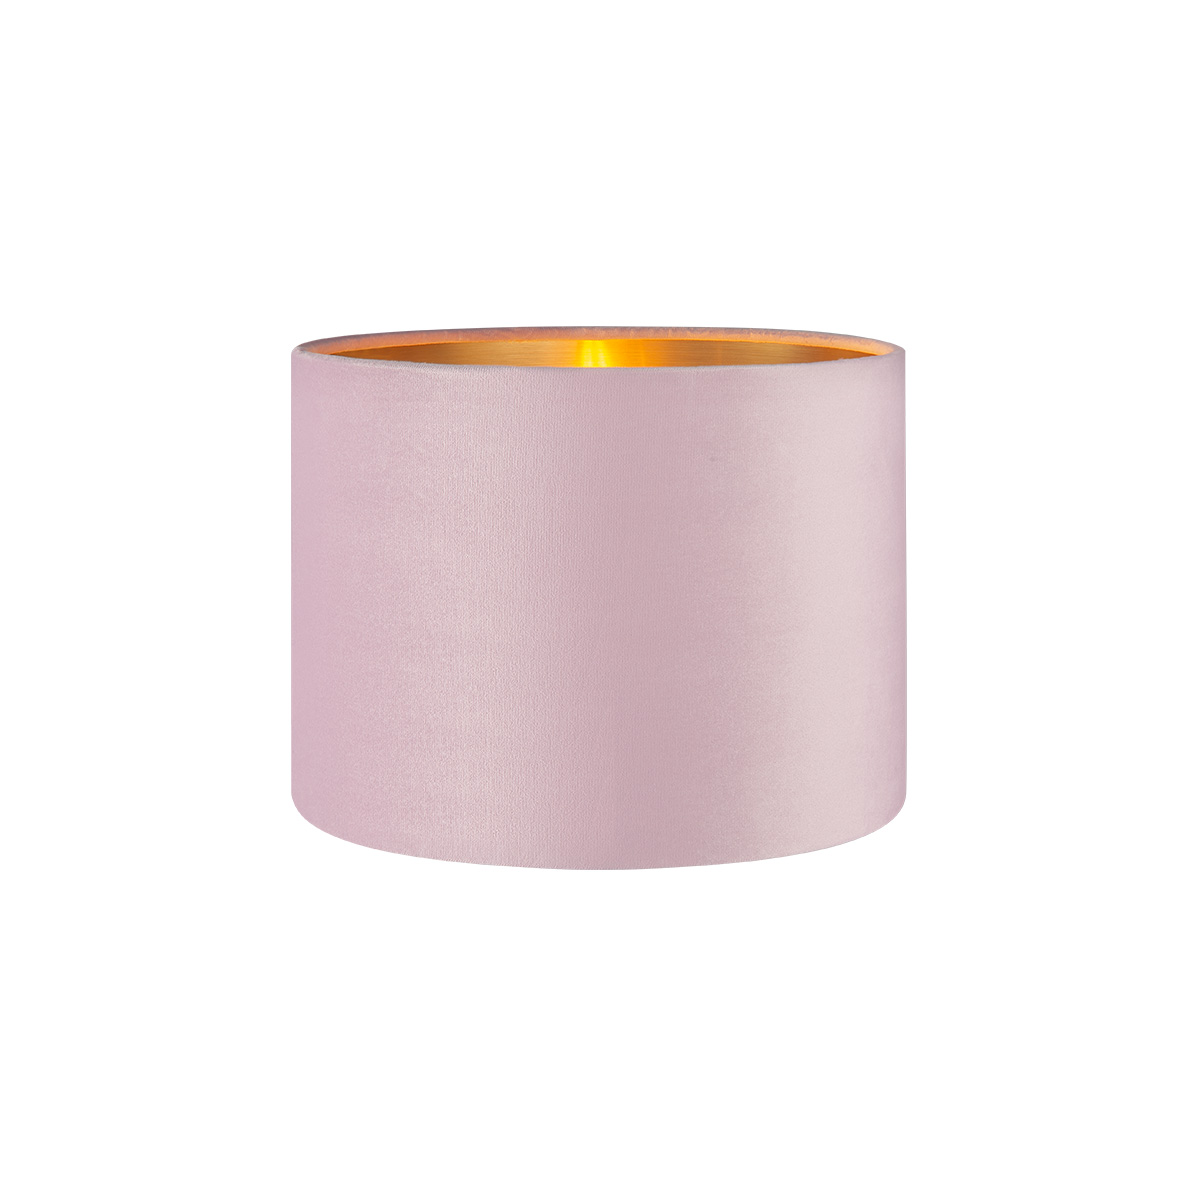 Tangla lighting - TLS7564-25PK - Lampshade - velvet - pink - diameter 25cm - E27